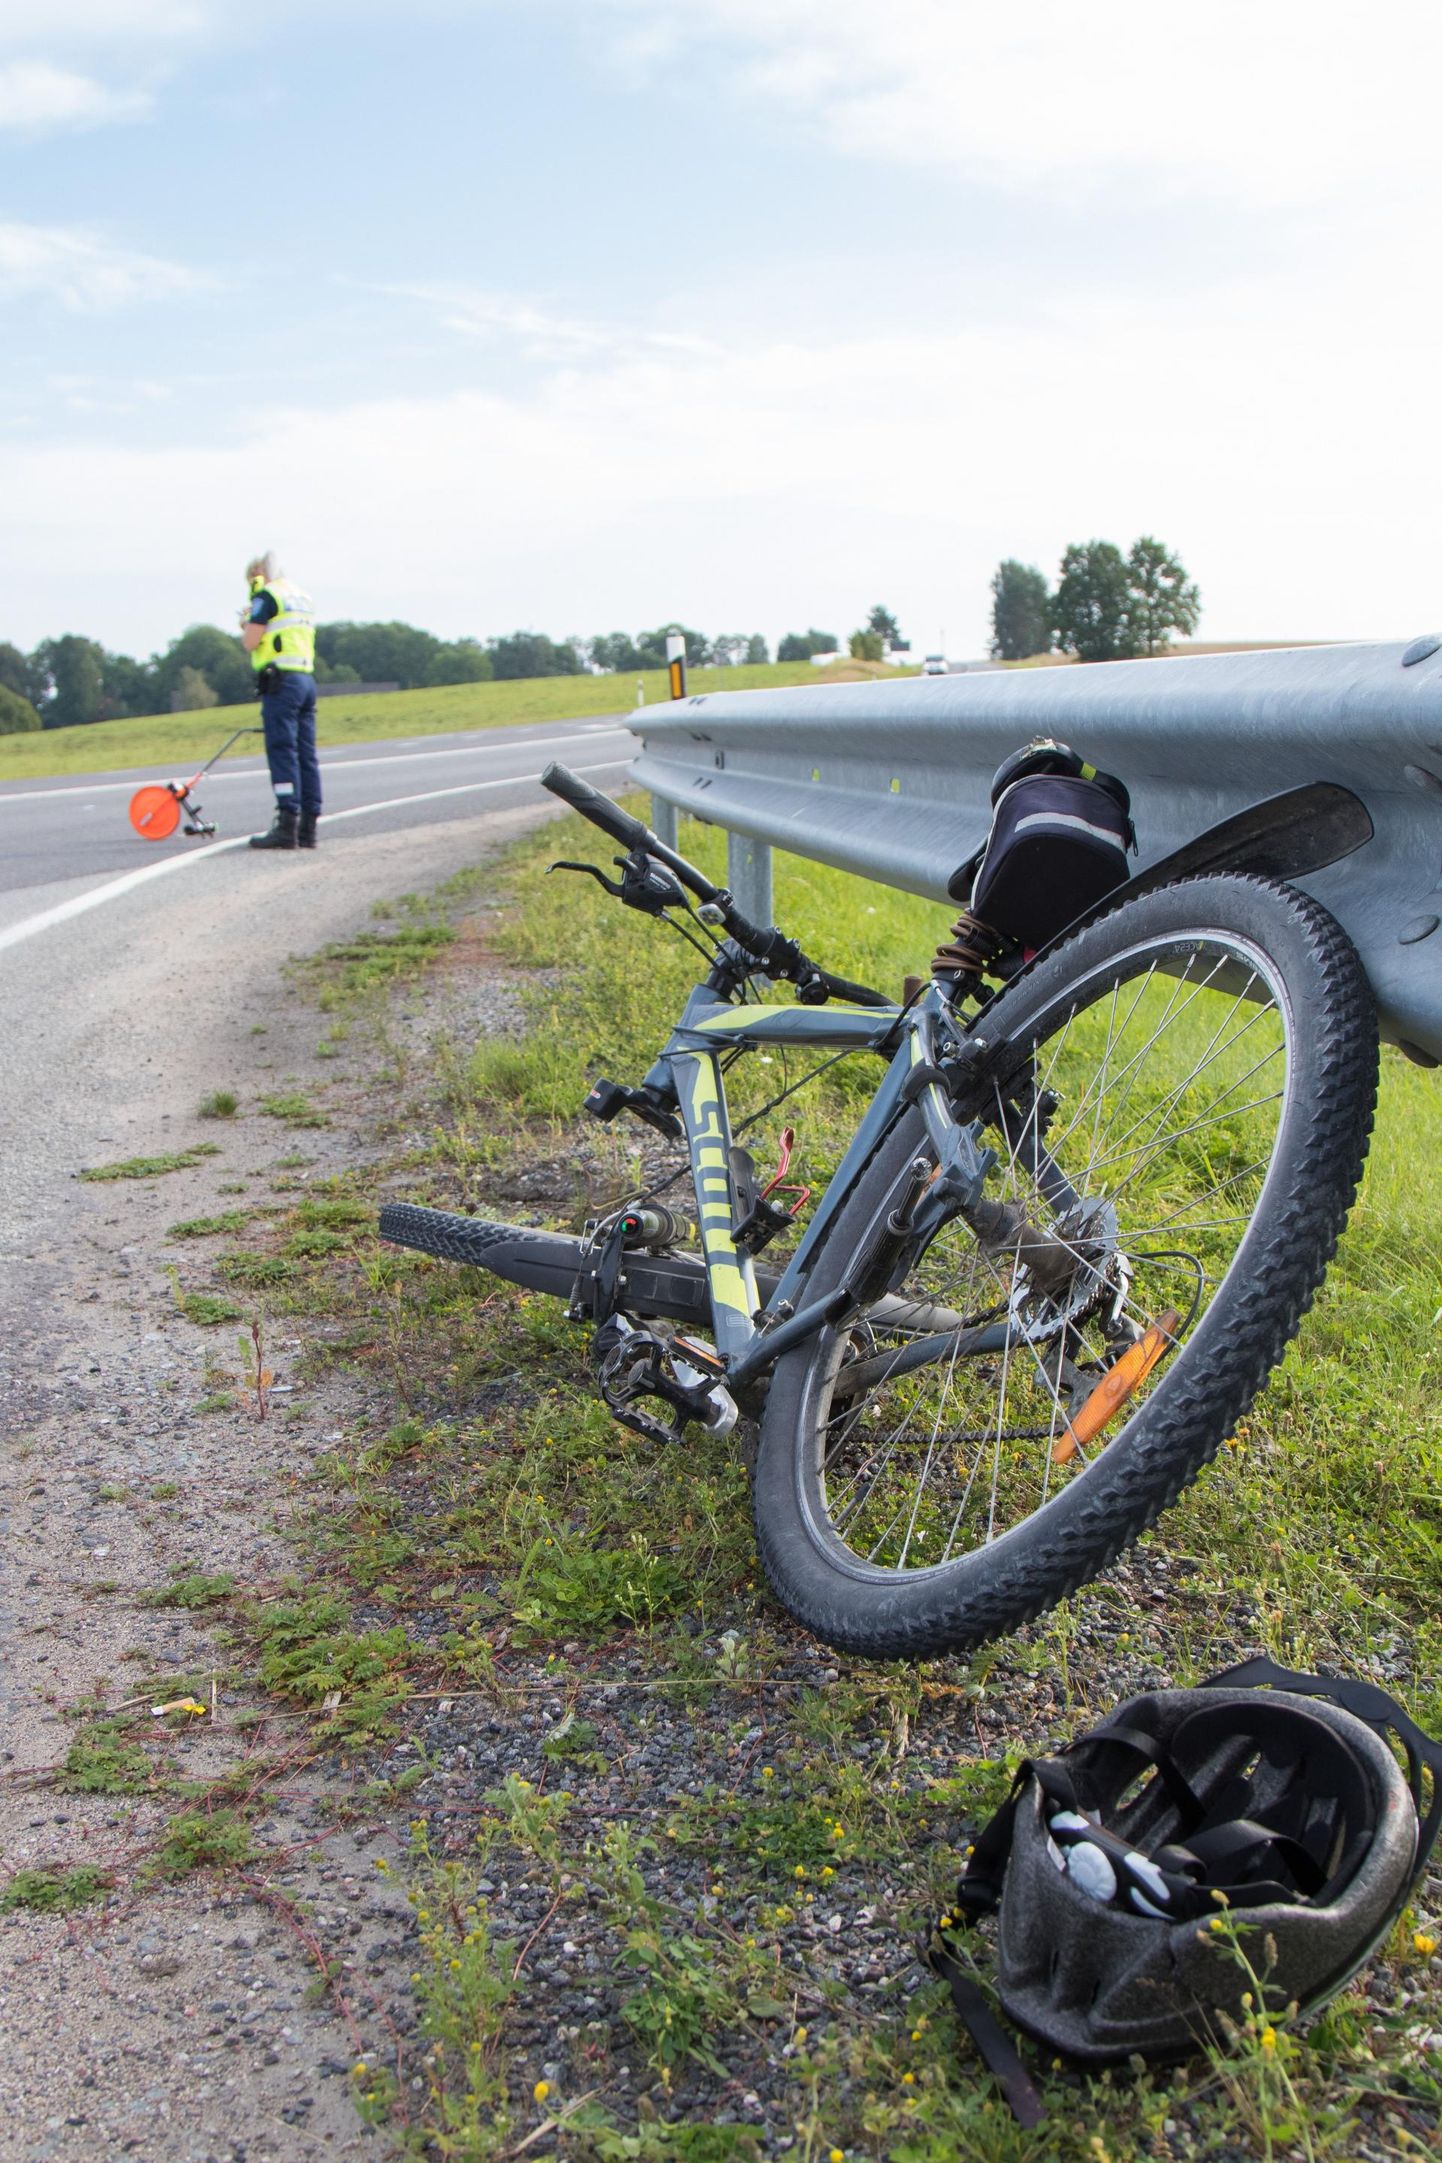 Õnnetuses sai vigastada jalgrattur, kes toimetati haiglasse. Pilt on illustratiivne.